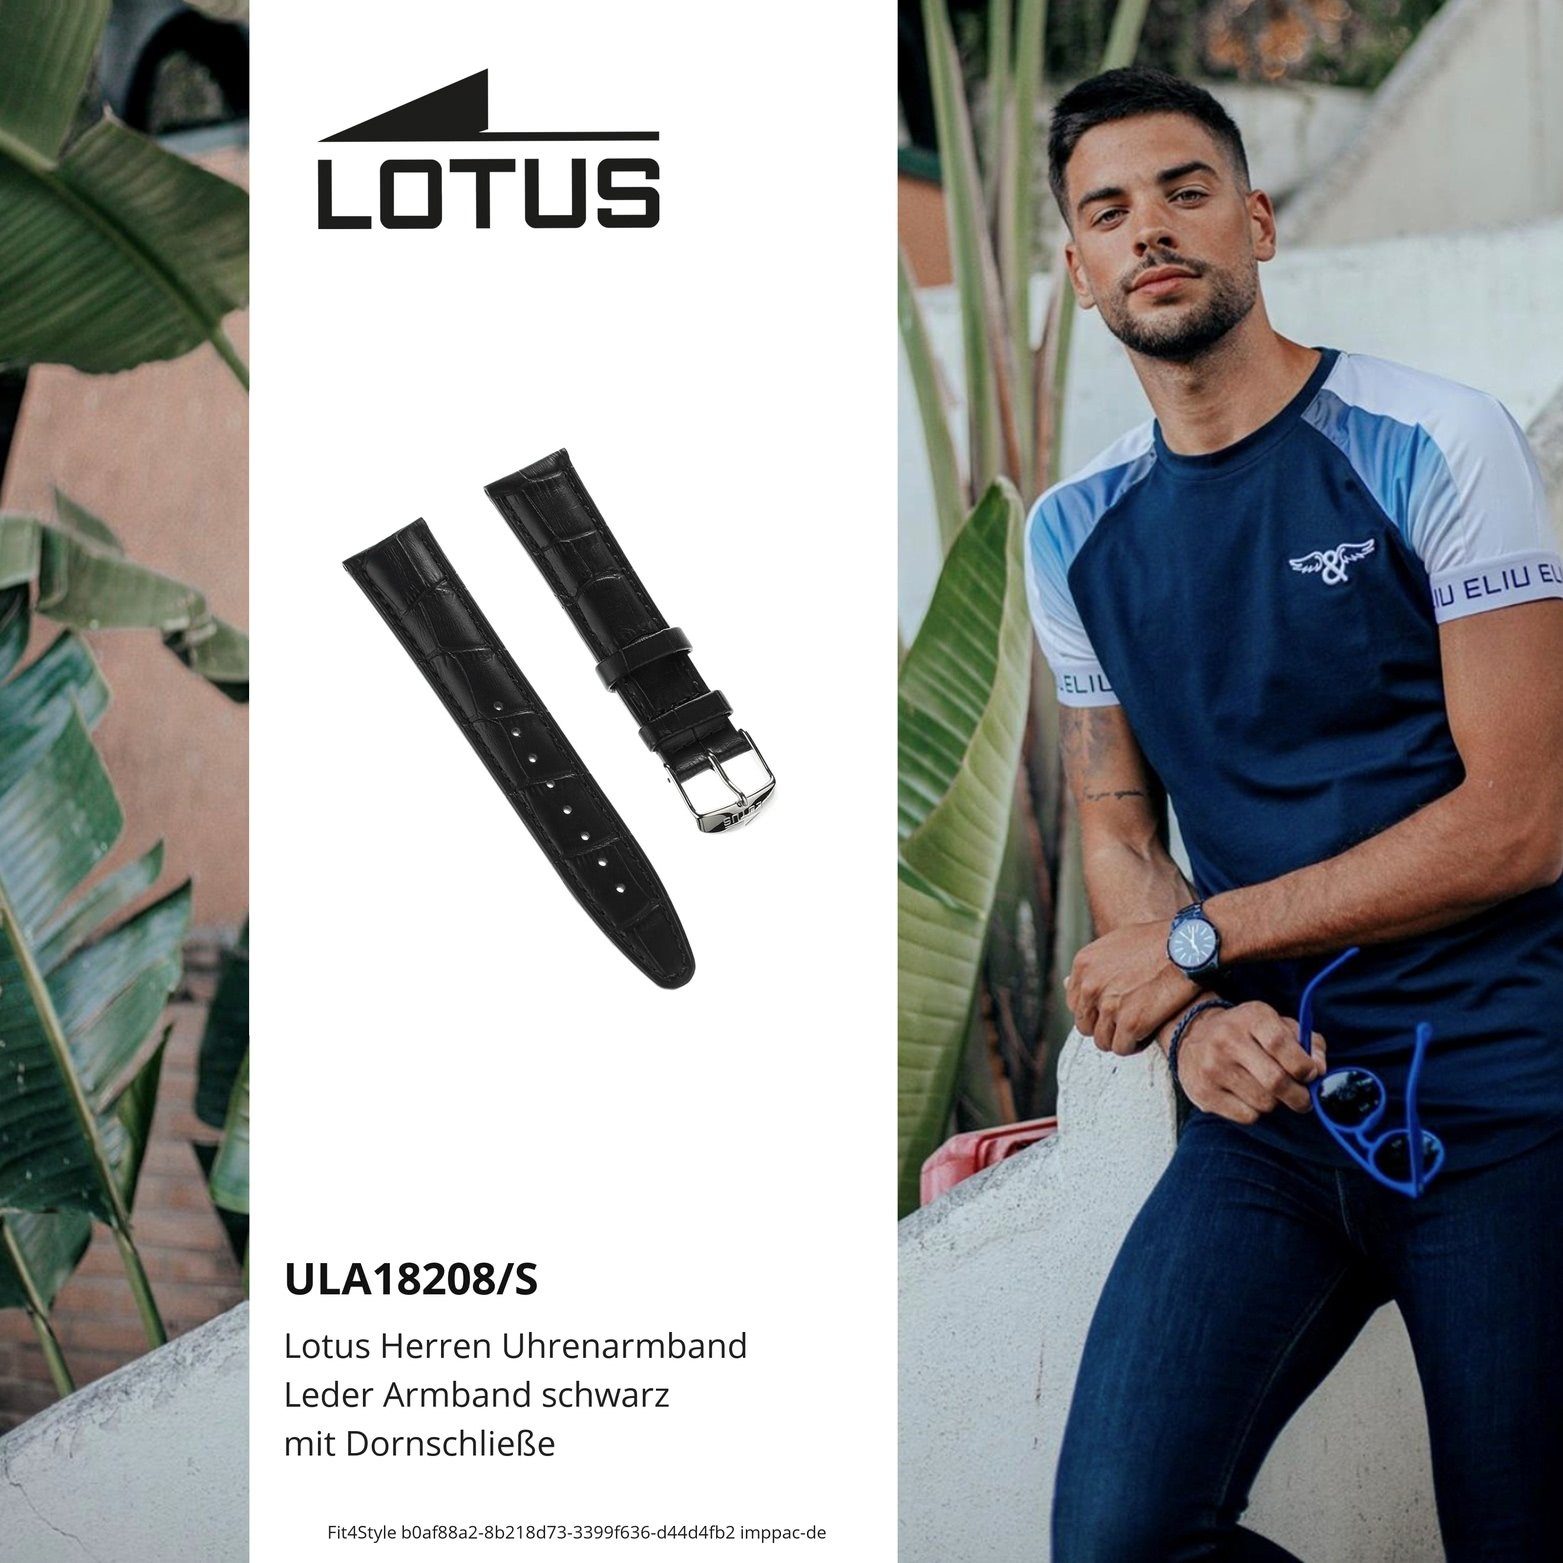 Lotus Uhrenarmband Lotus Herren Uhrenarmband Lederarmband, mit Fashion-Style 21mm, Herrenuhr